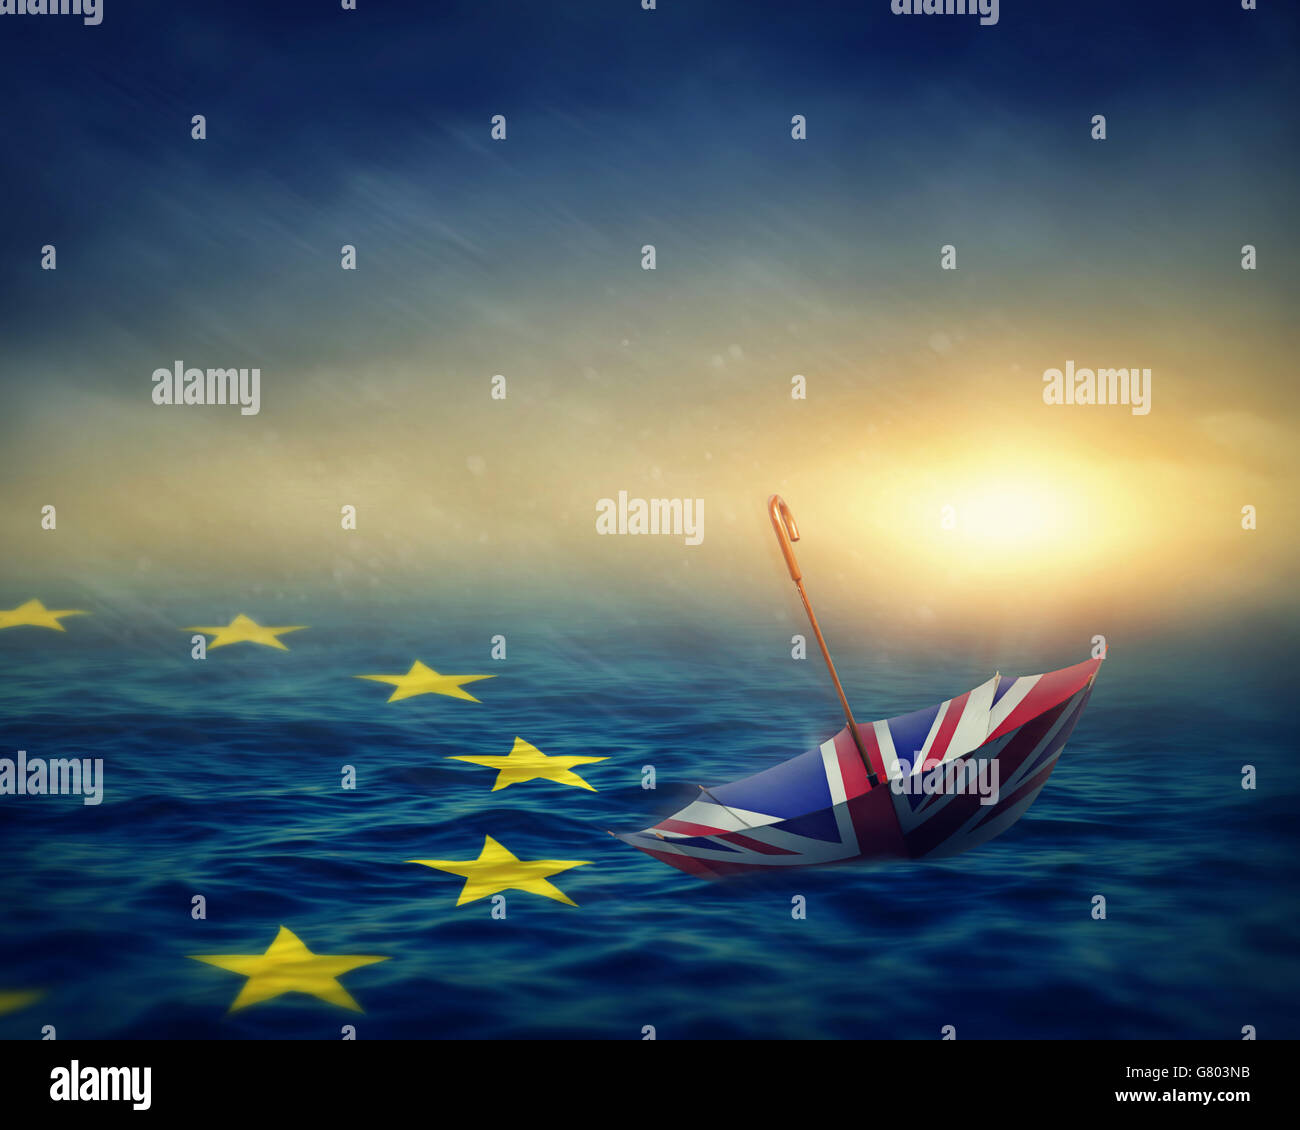 Regenschirm mit der Flagge des Vereinigten Königreichs und Meer mit der Flagge Europäische Union.Brexit Konzept. Stockfoto